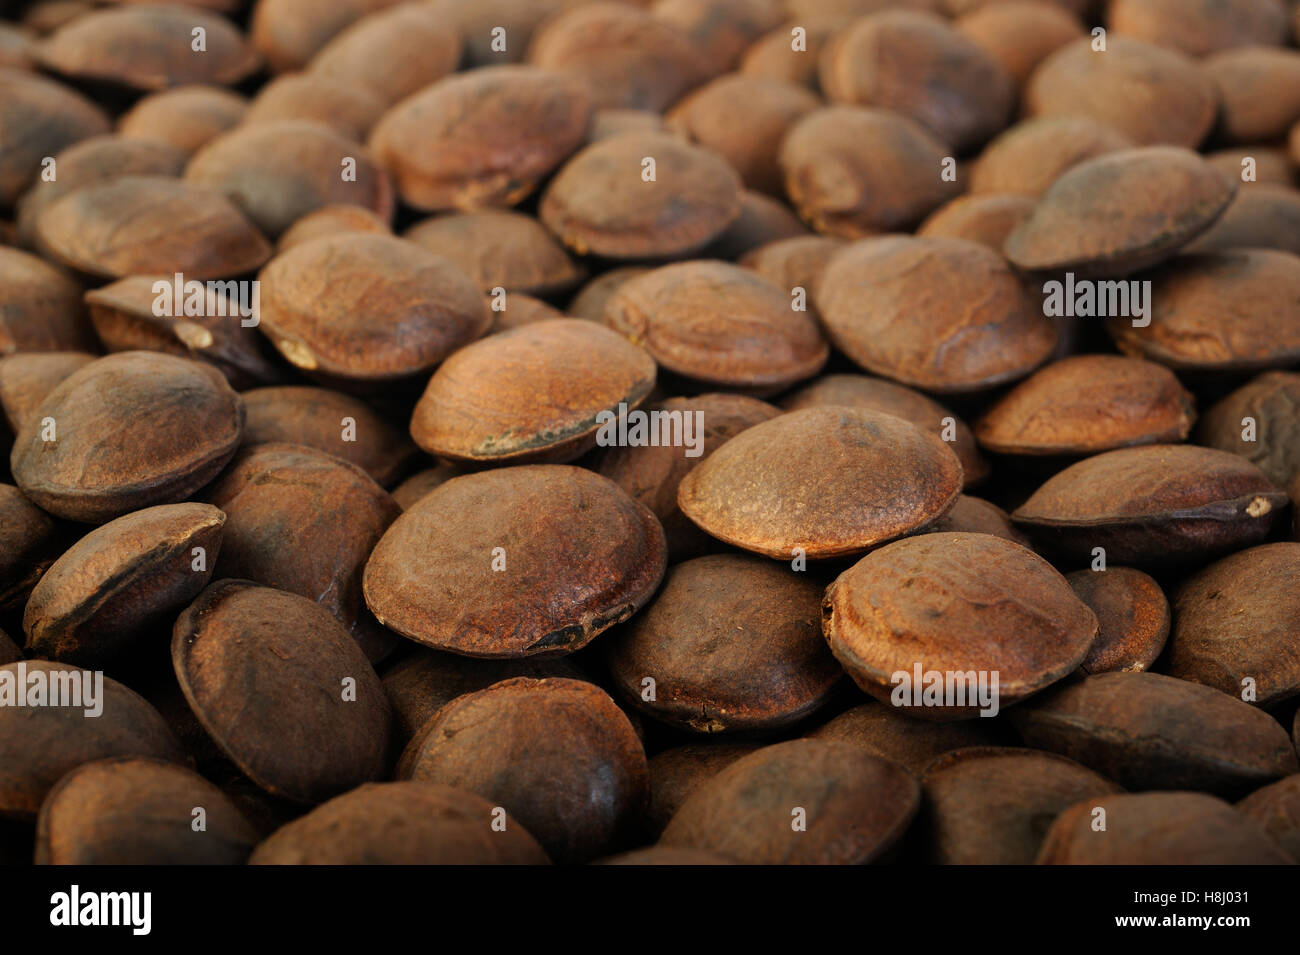 roasted sacha inchi seeds background Stock Photo